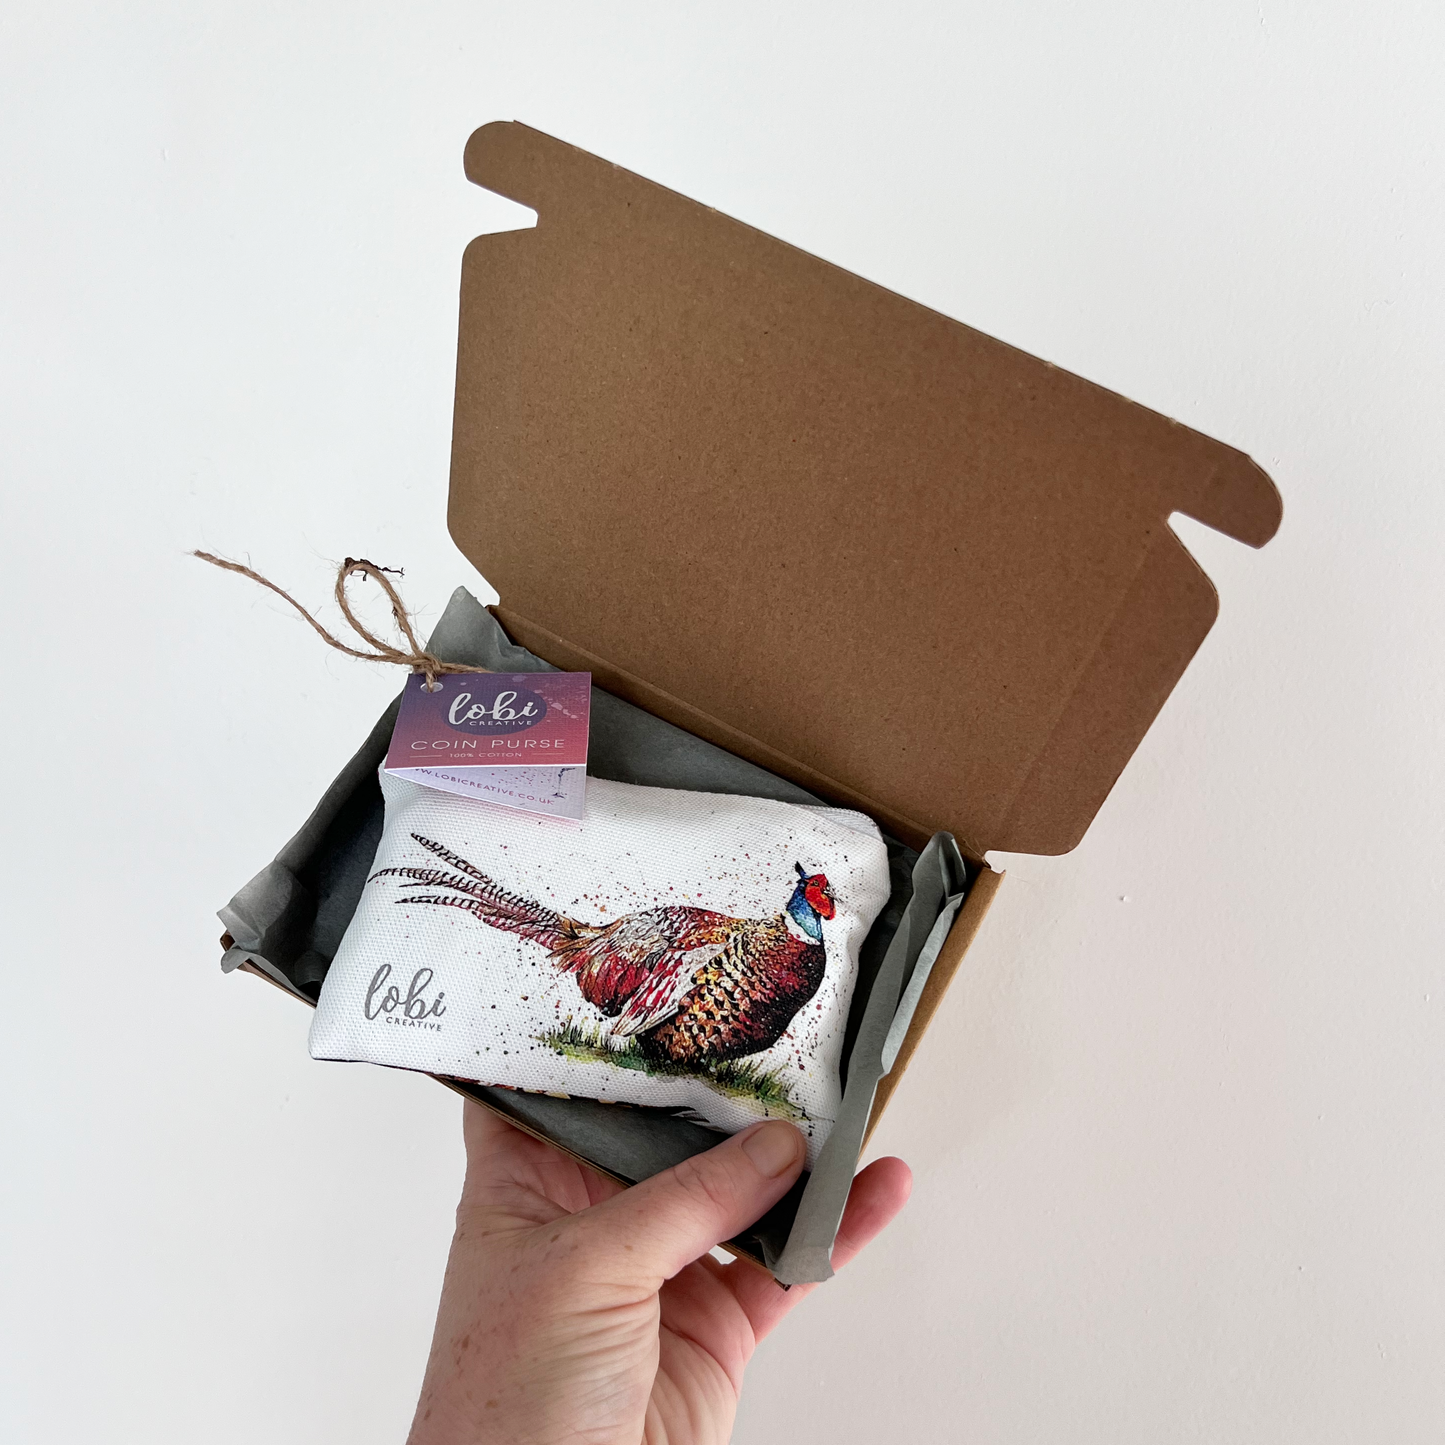 Watercolour Pheasant Cotton Coin Purse & Gift Box